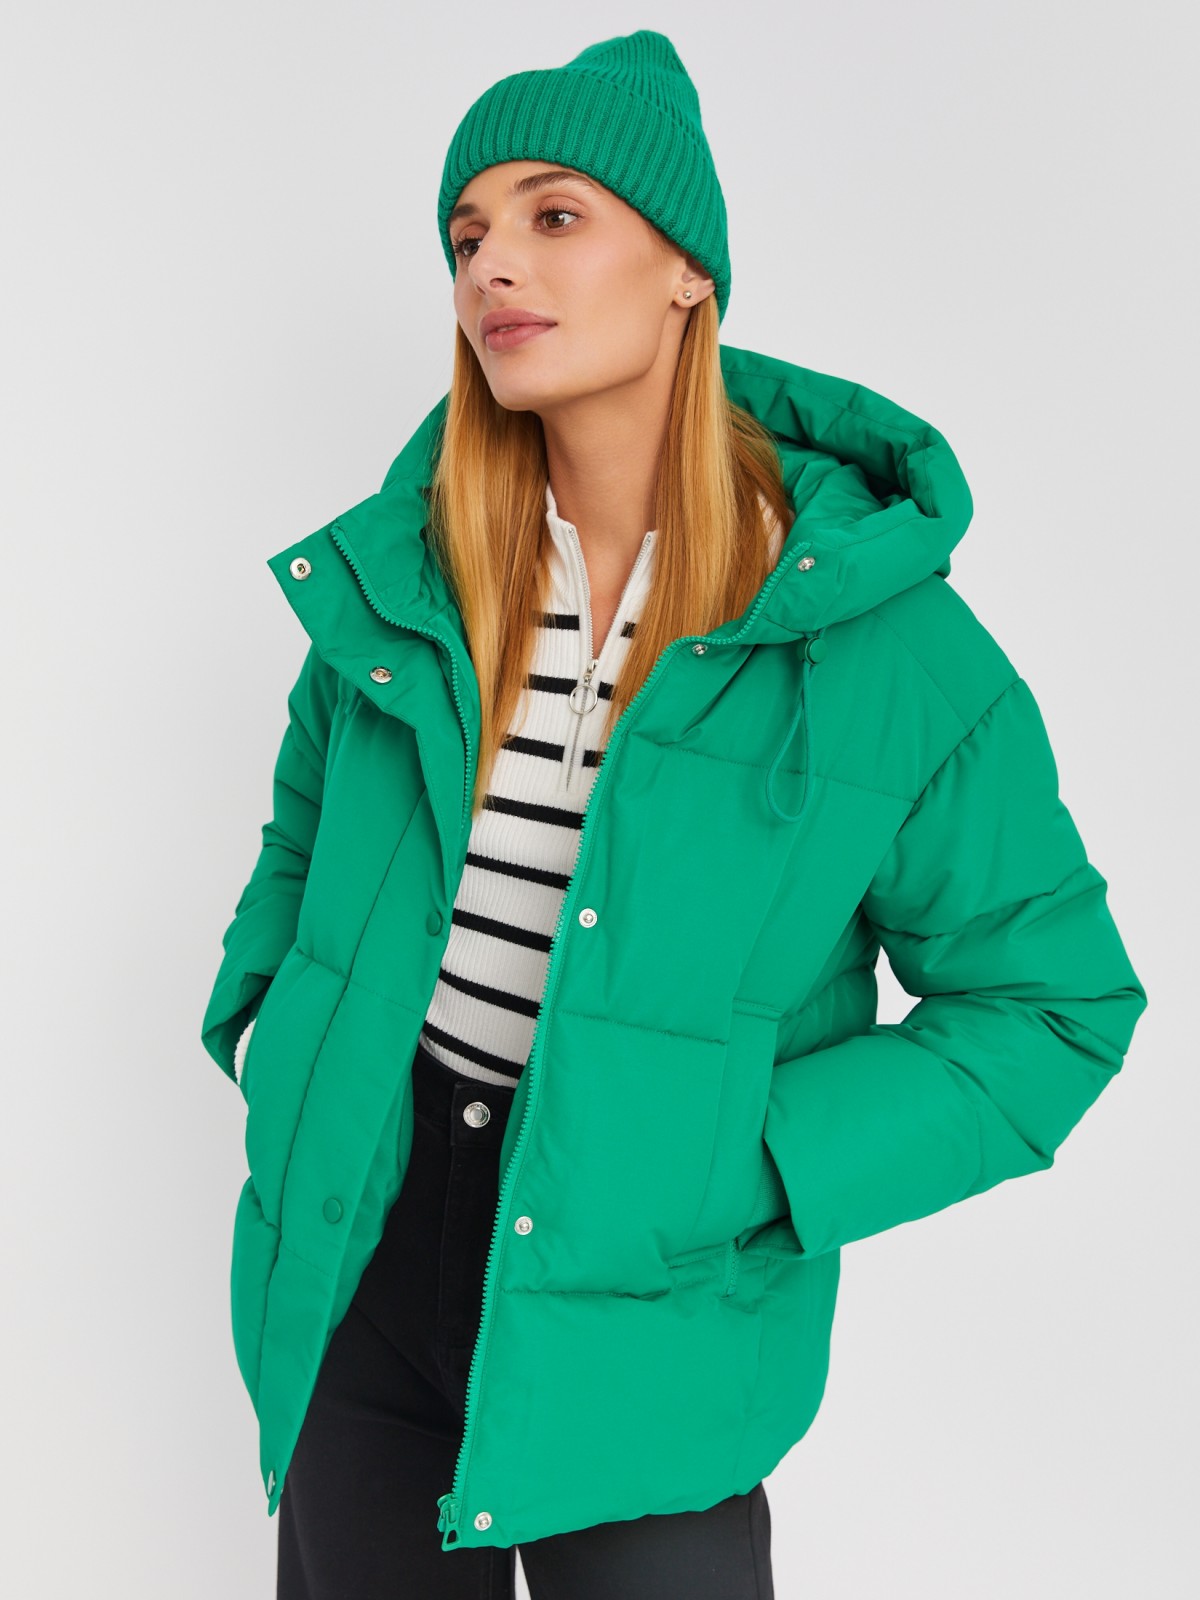 Тёплая стёганая куртка с капюшоном и удлинёнными внутренними манжетами zolla 023335112274, цвет зеленый, размер M